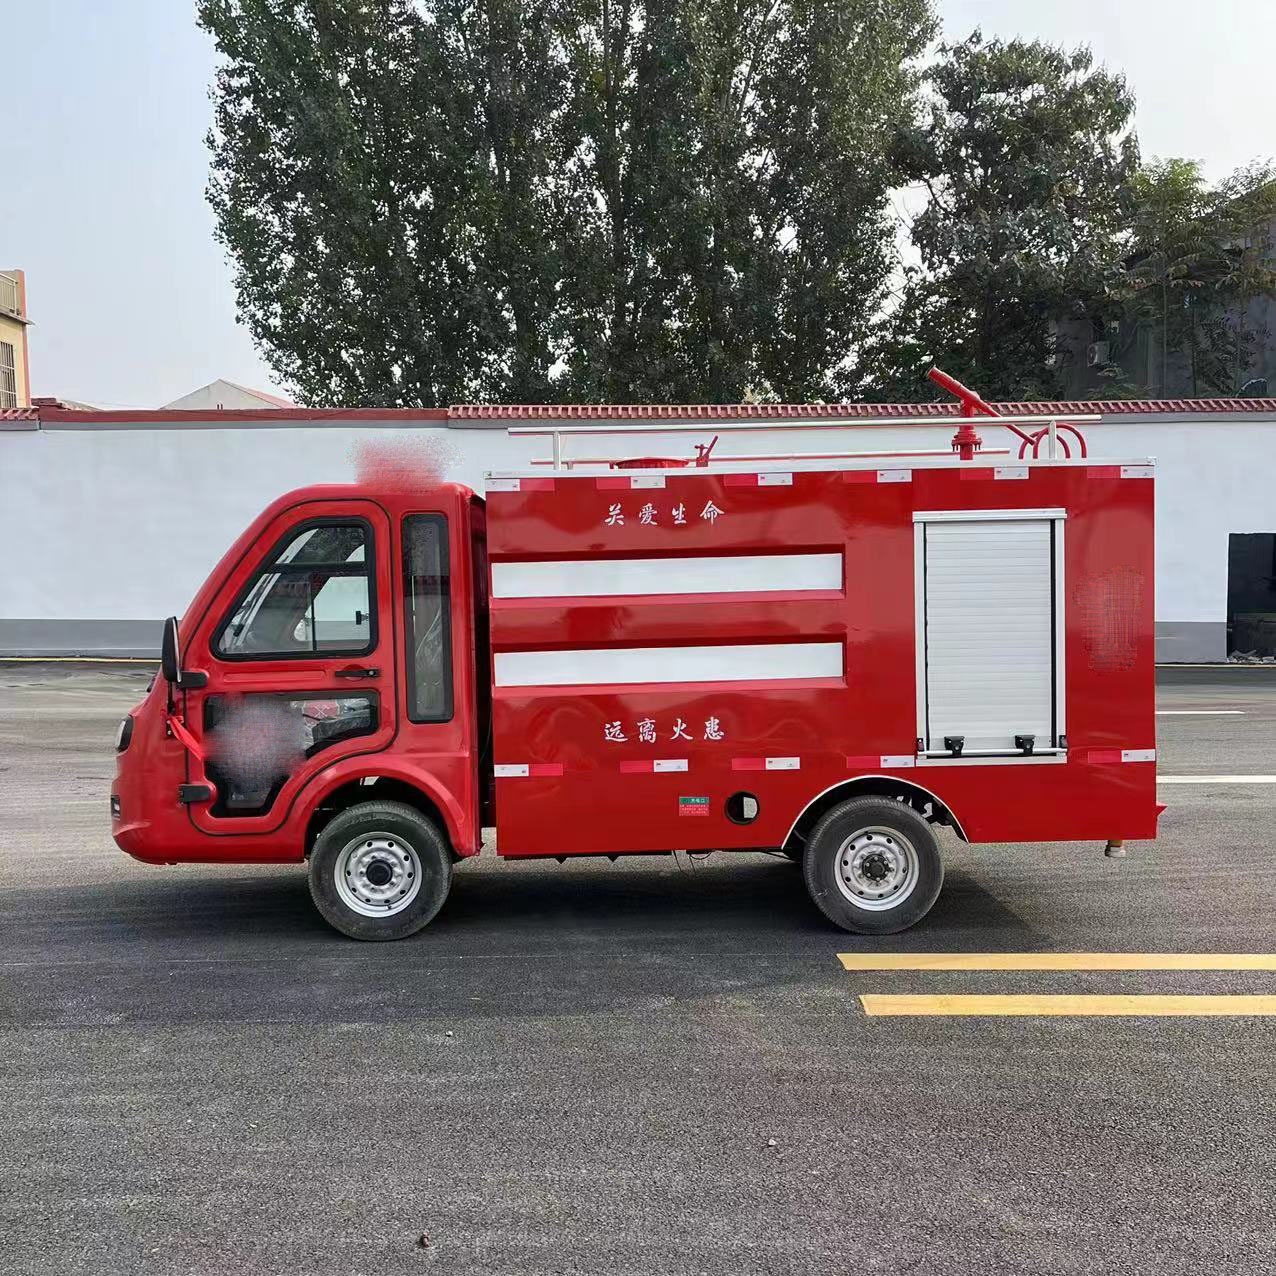 微型消防车 牛头型电动消防洒水车 装自吸水泵 电驱动免加油节能 永固威